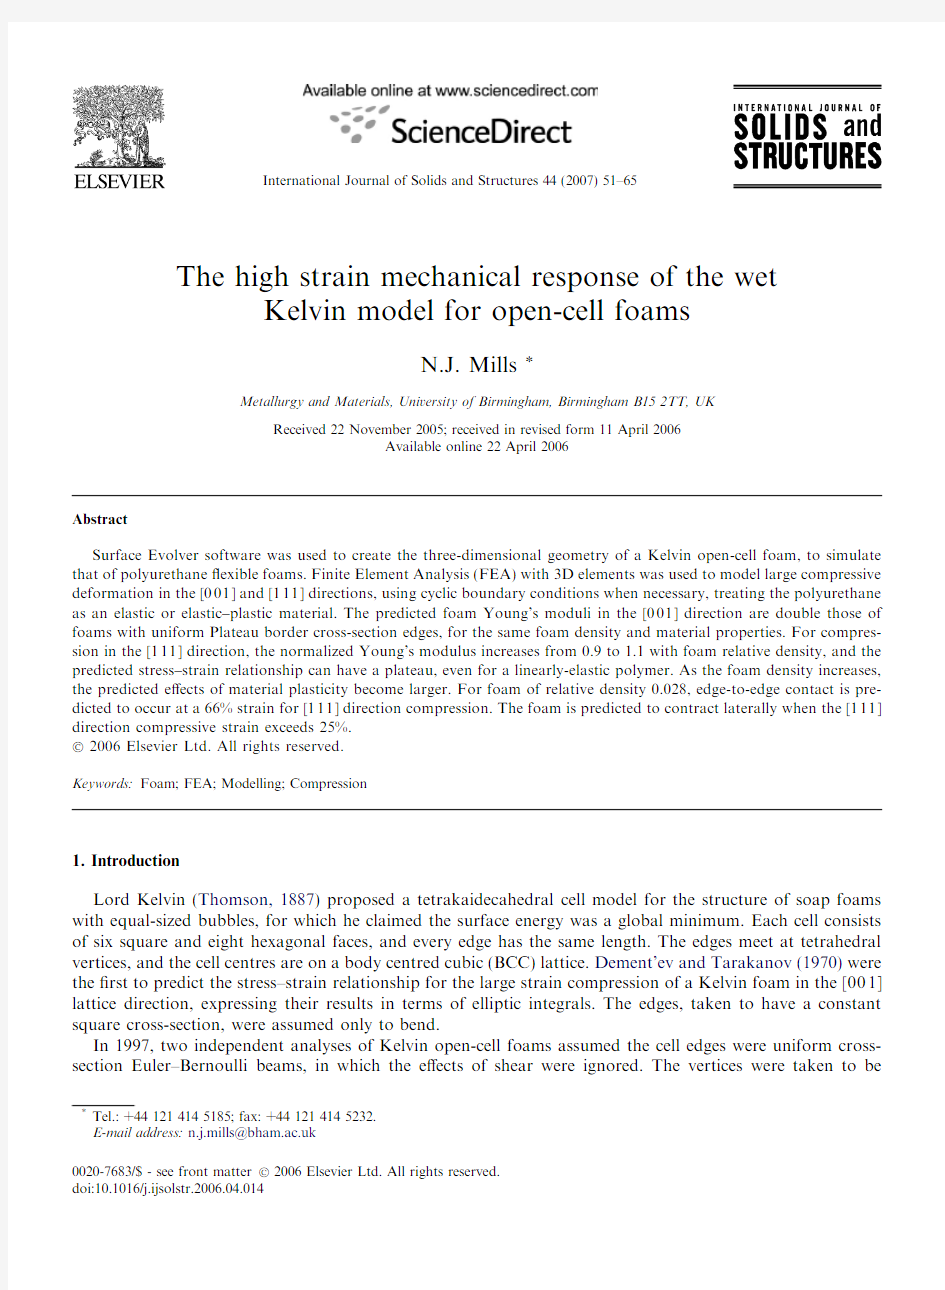 The high strain mechanical response of the wet Kelvin model for open-cell foams